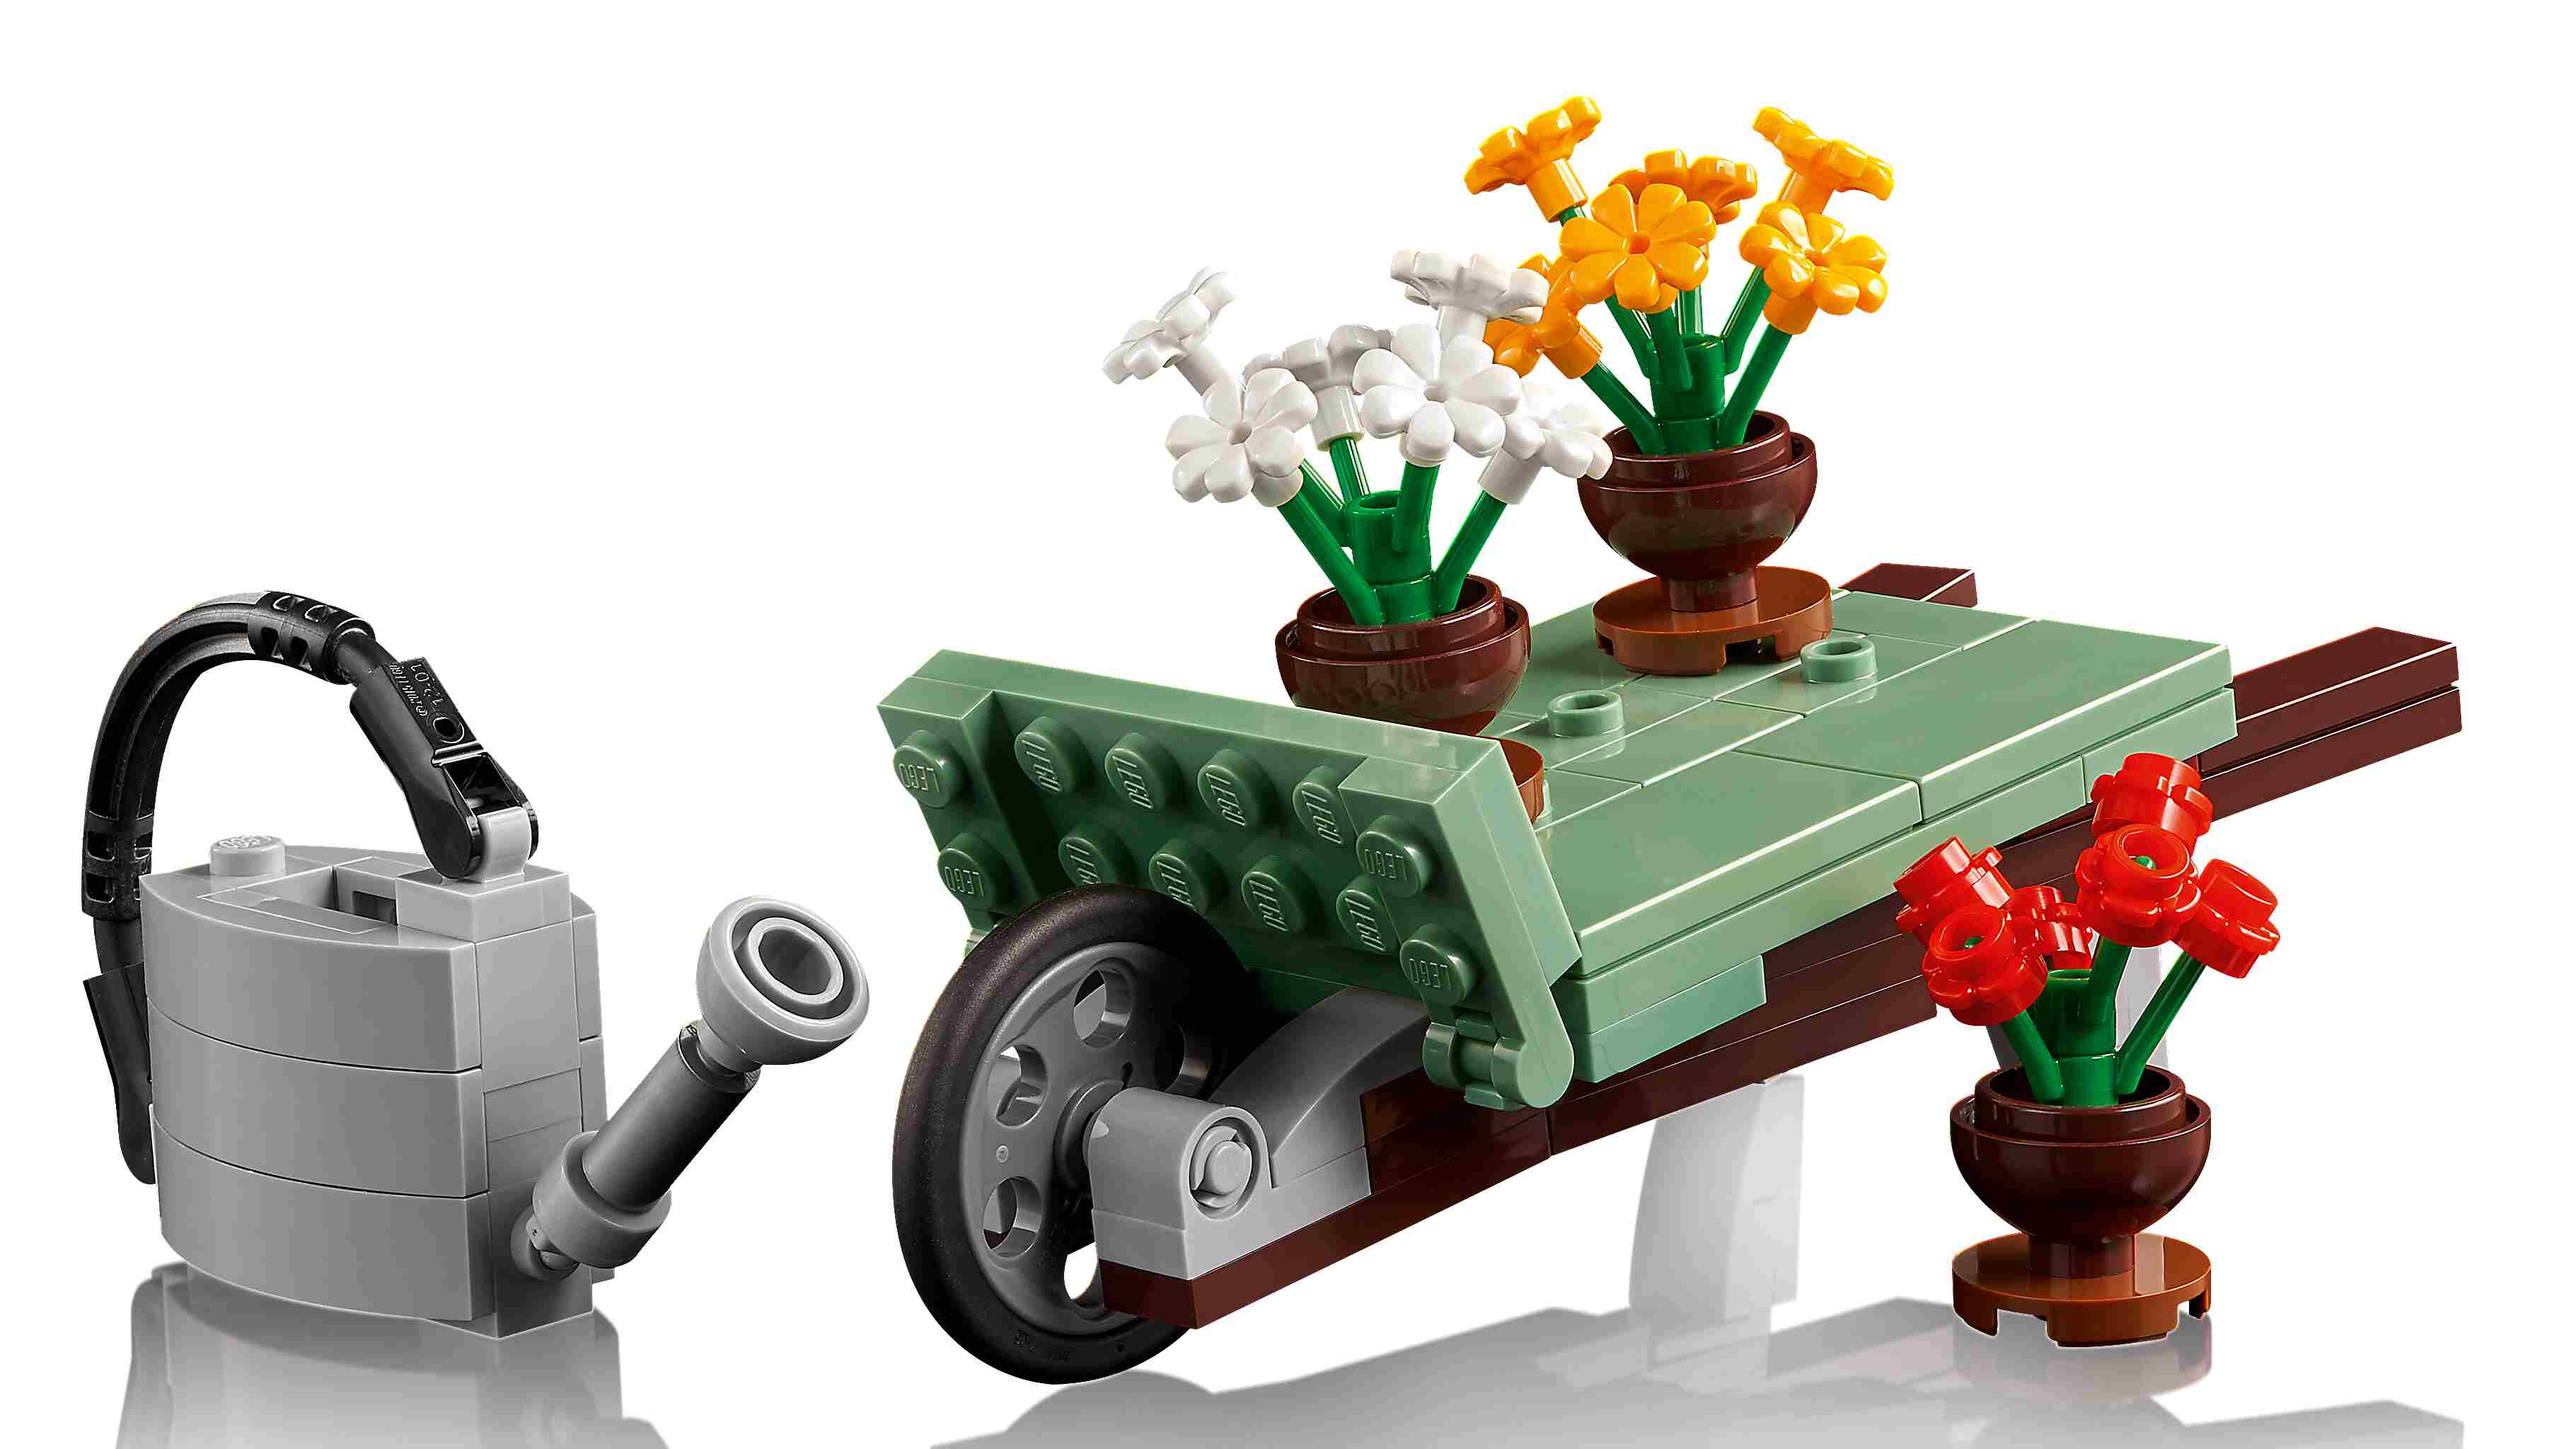 LEGO 10290 Icons Pickup, Sammlermodell, authentische Pickup-Merkmale